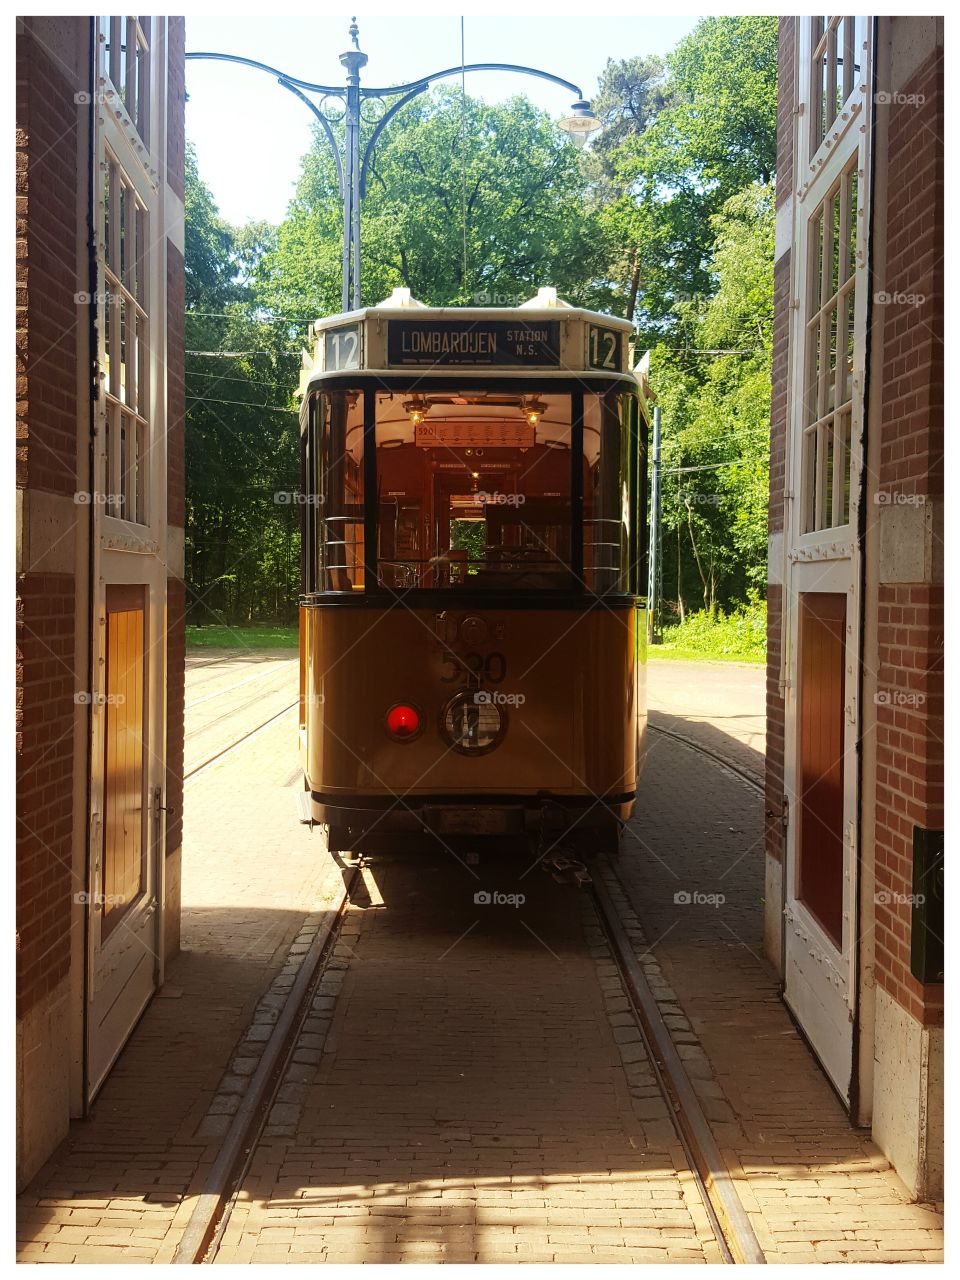 An antique tram, the Netherlands